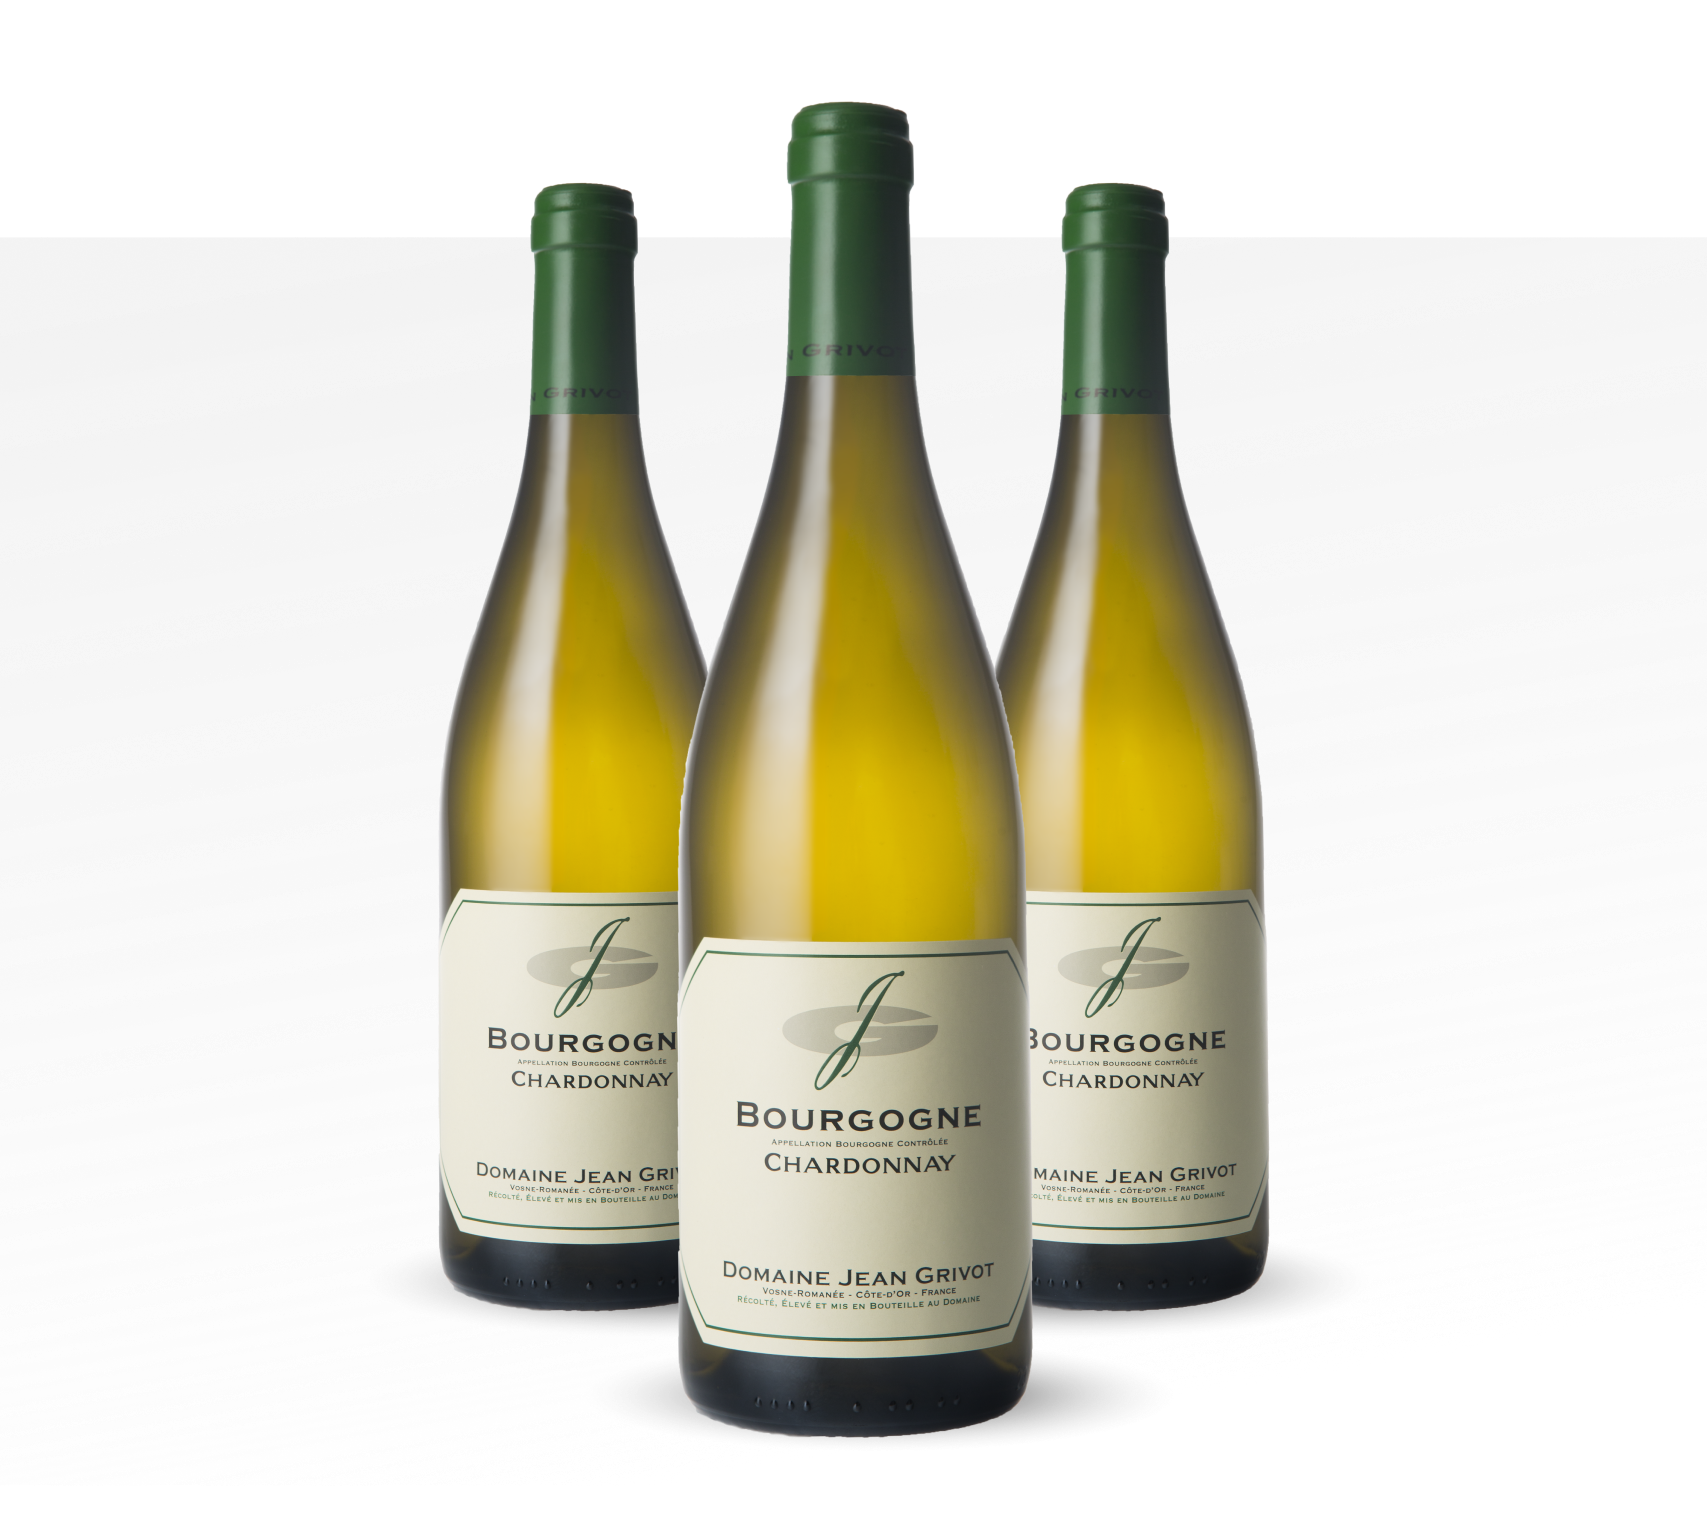 Bouteilles de Bourgogne Chardonnay Domaine J. Grivot